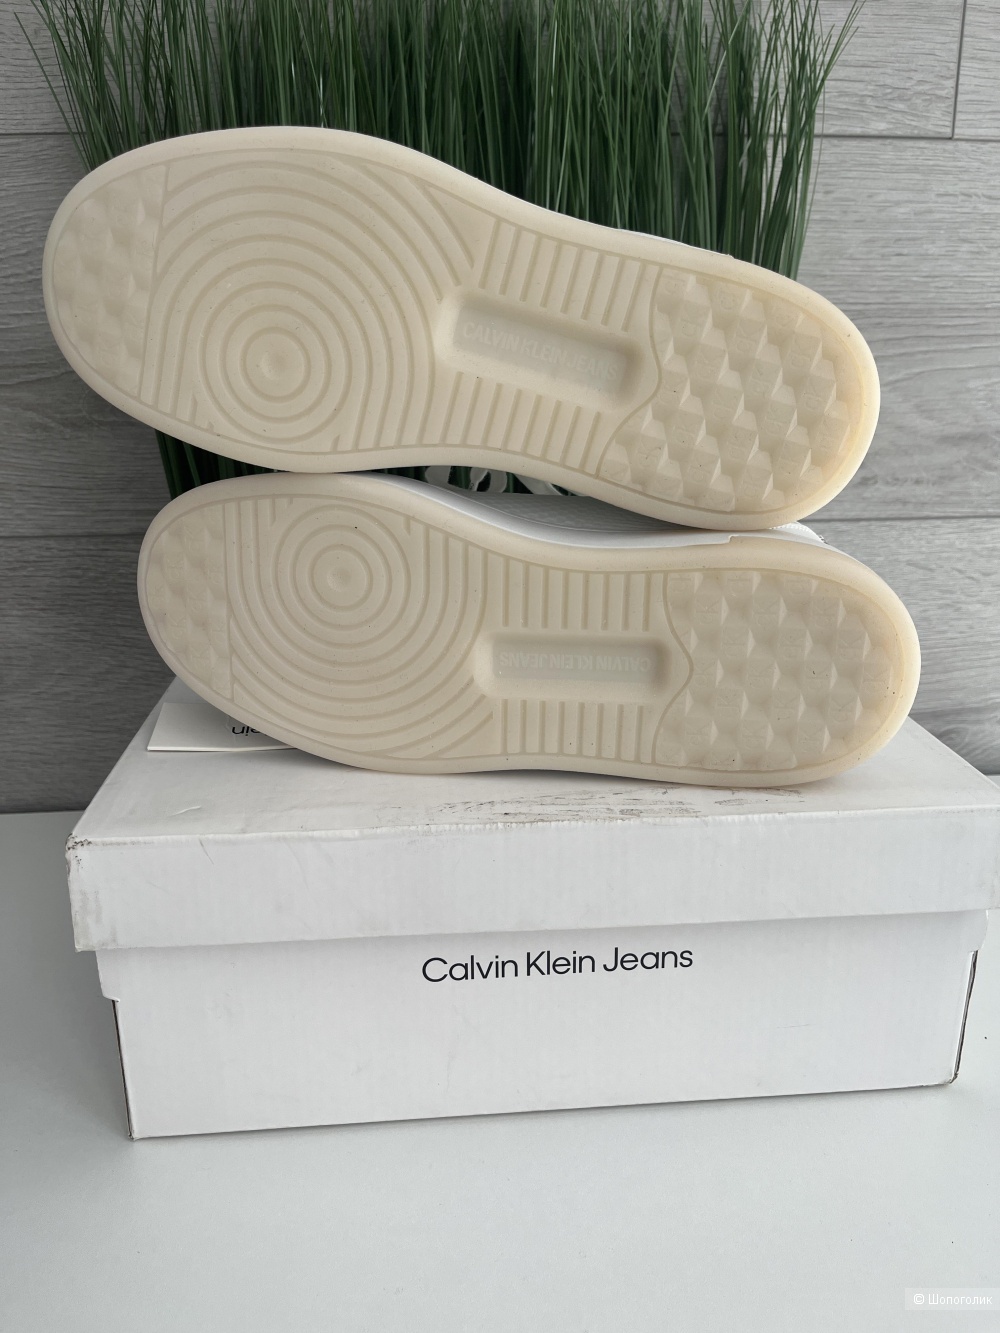 Кеды Calvin Klein Jeans 37